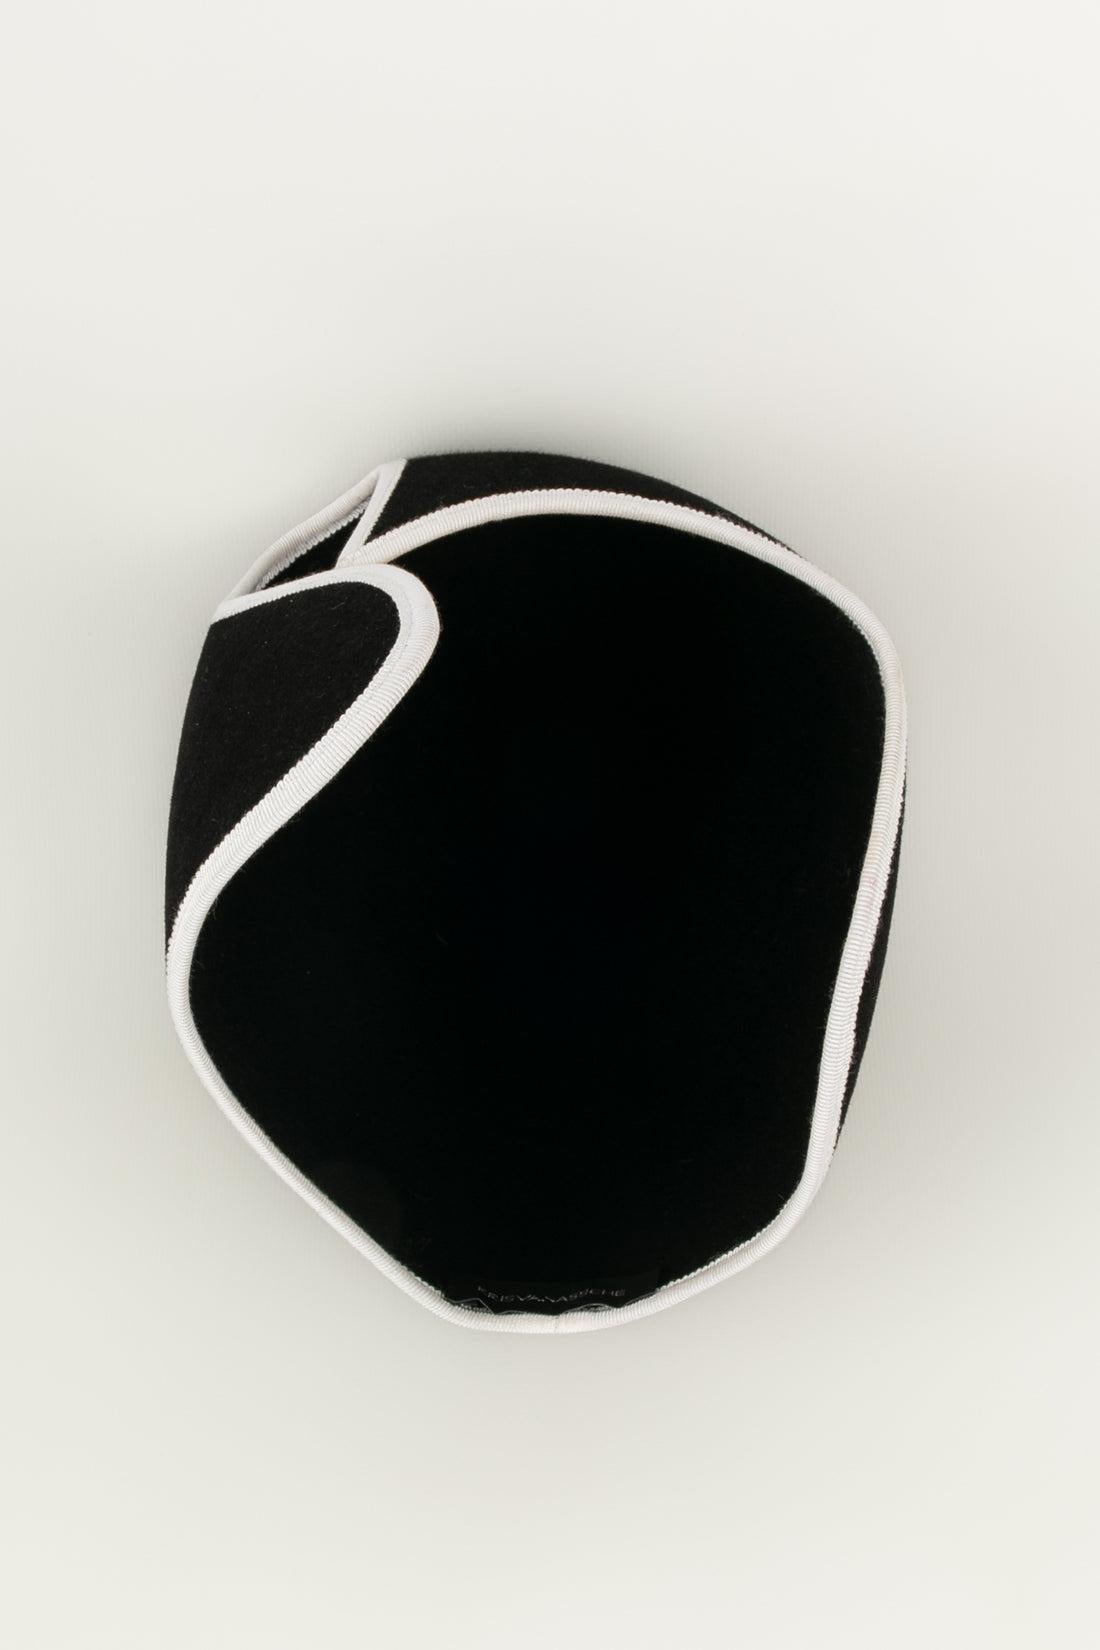 Women's Kris Van Assche Hat in Black and White